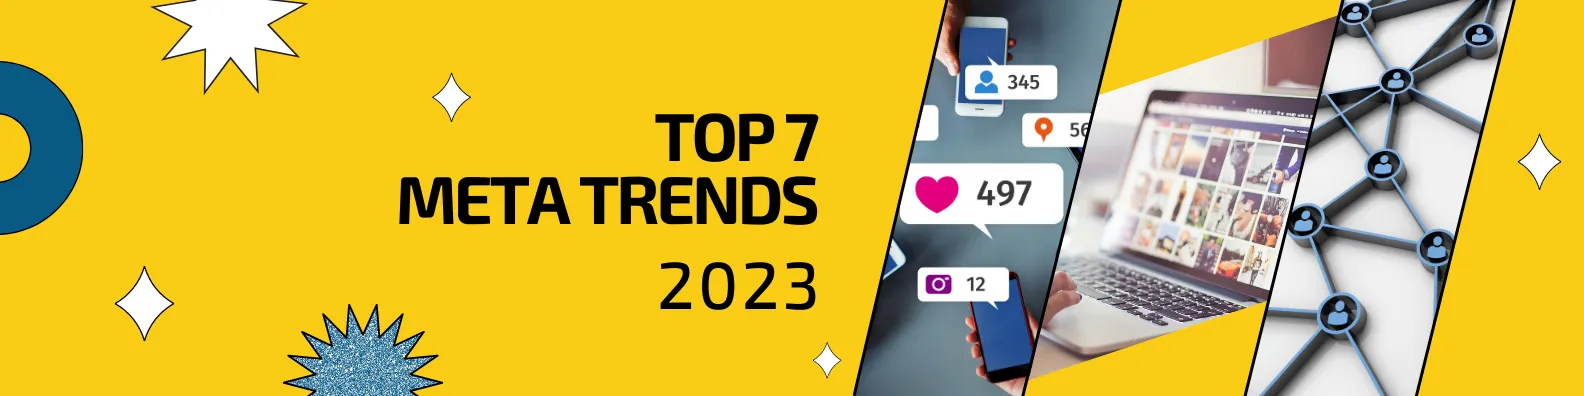 Top 7 Meta Trends 2023